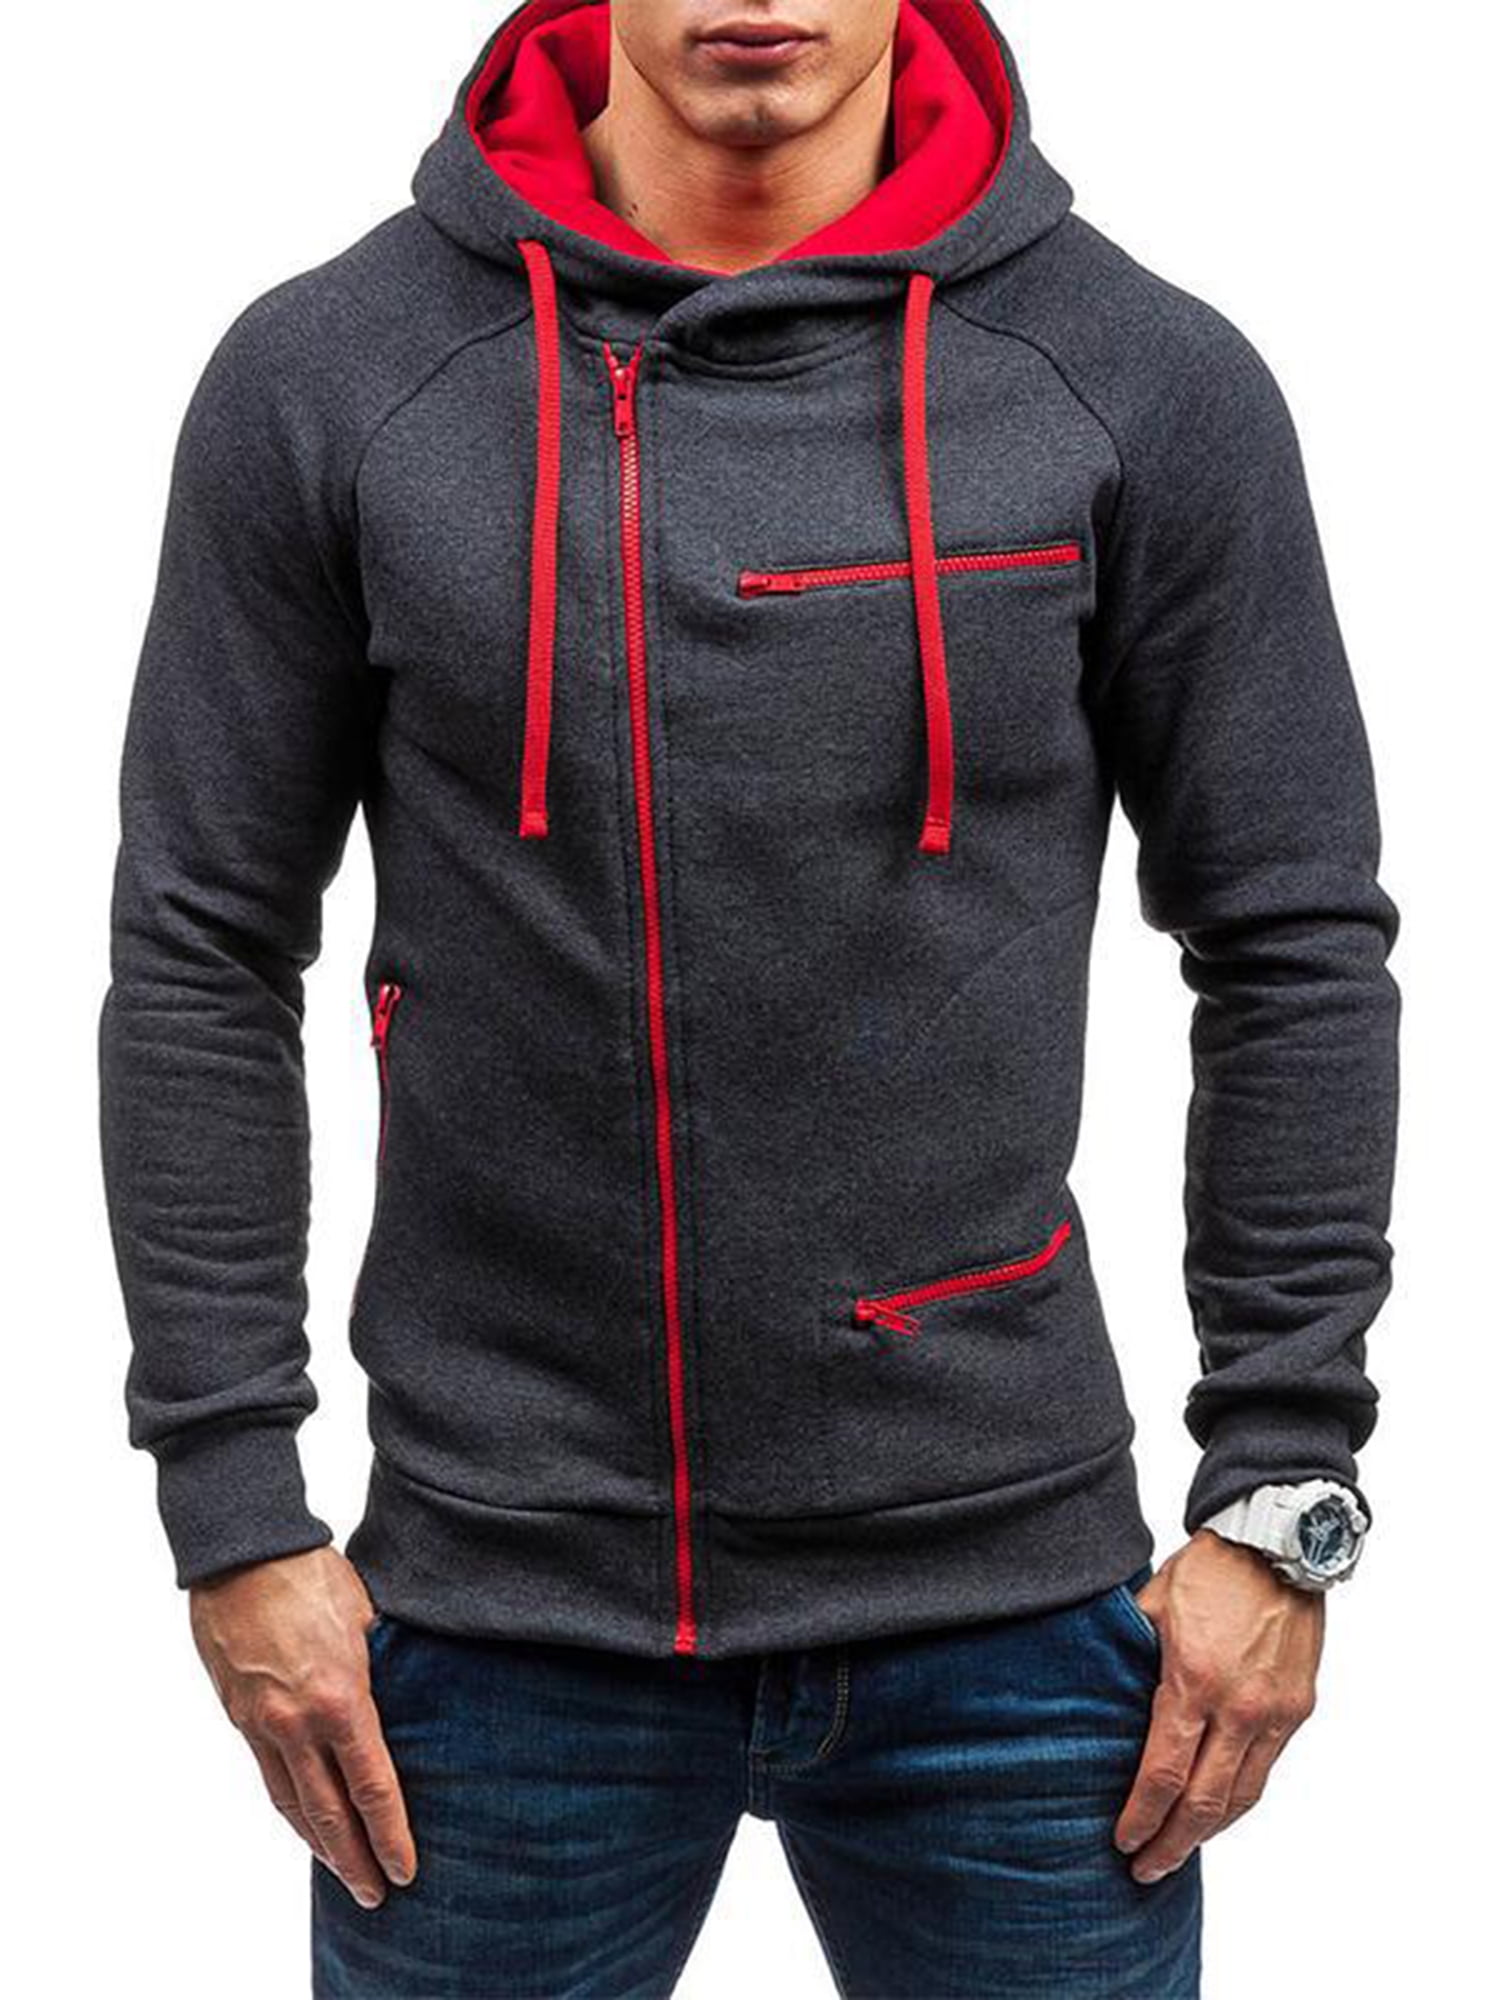 Men Pullover Sweatshirt Pullover Zip Up Casual Hoodie Outwear Sport Jacket Tops 